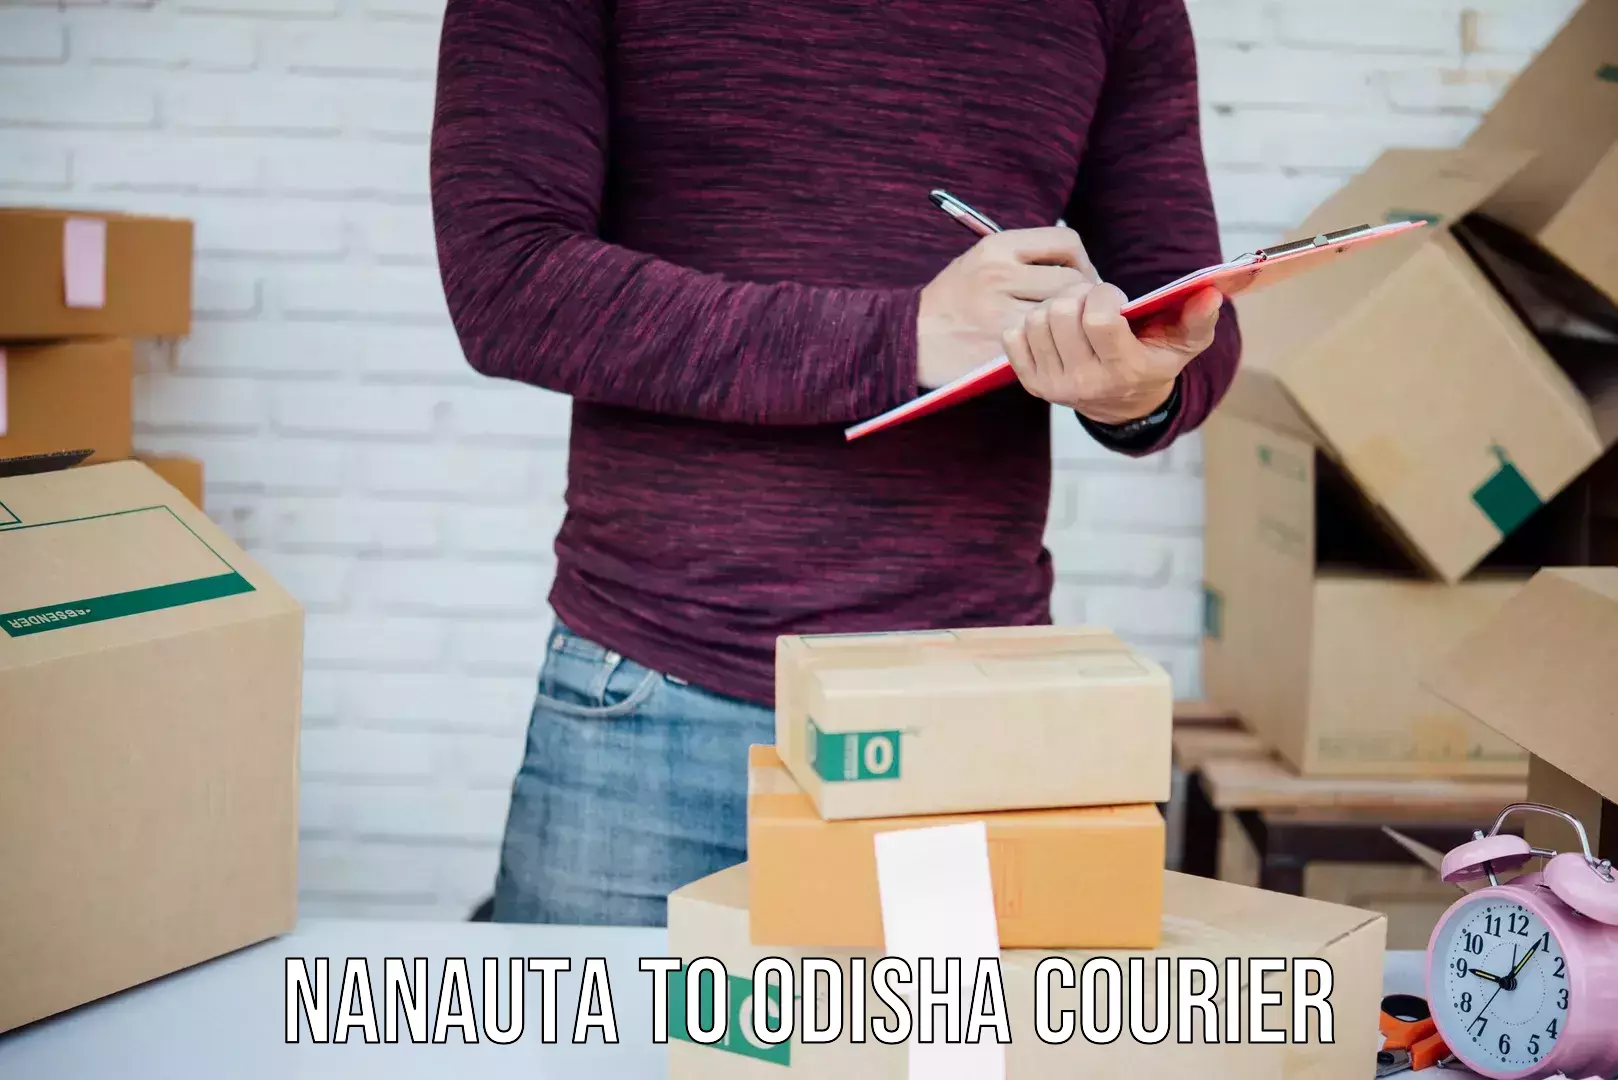 Custom courier packages Nanauta to Morada